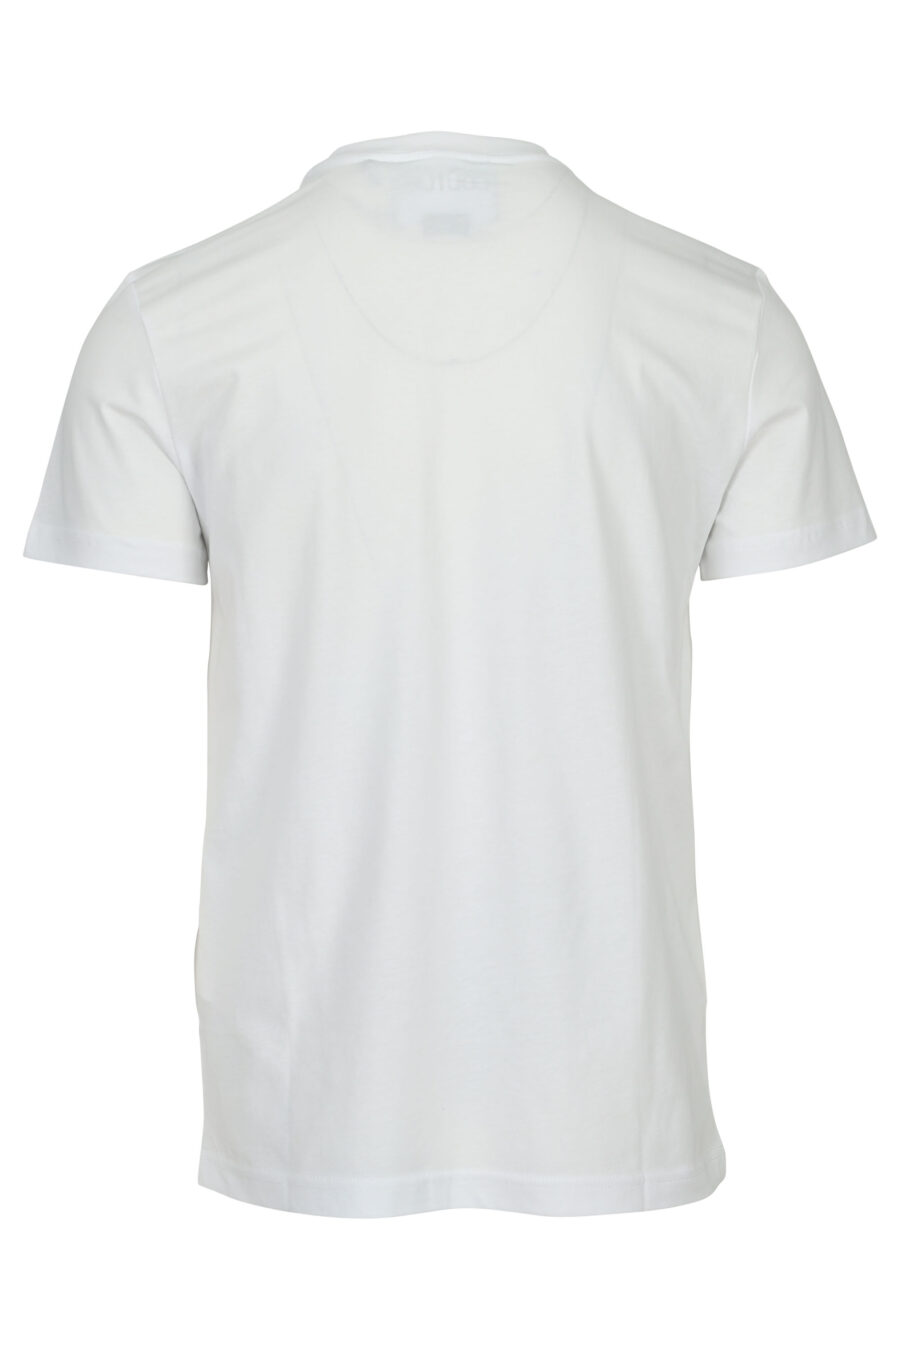 Camiseta blanca con minilogo circular brillante dorado - 8052019599688 1